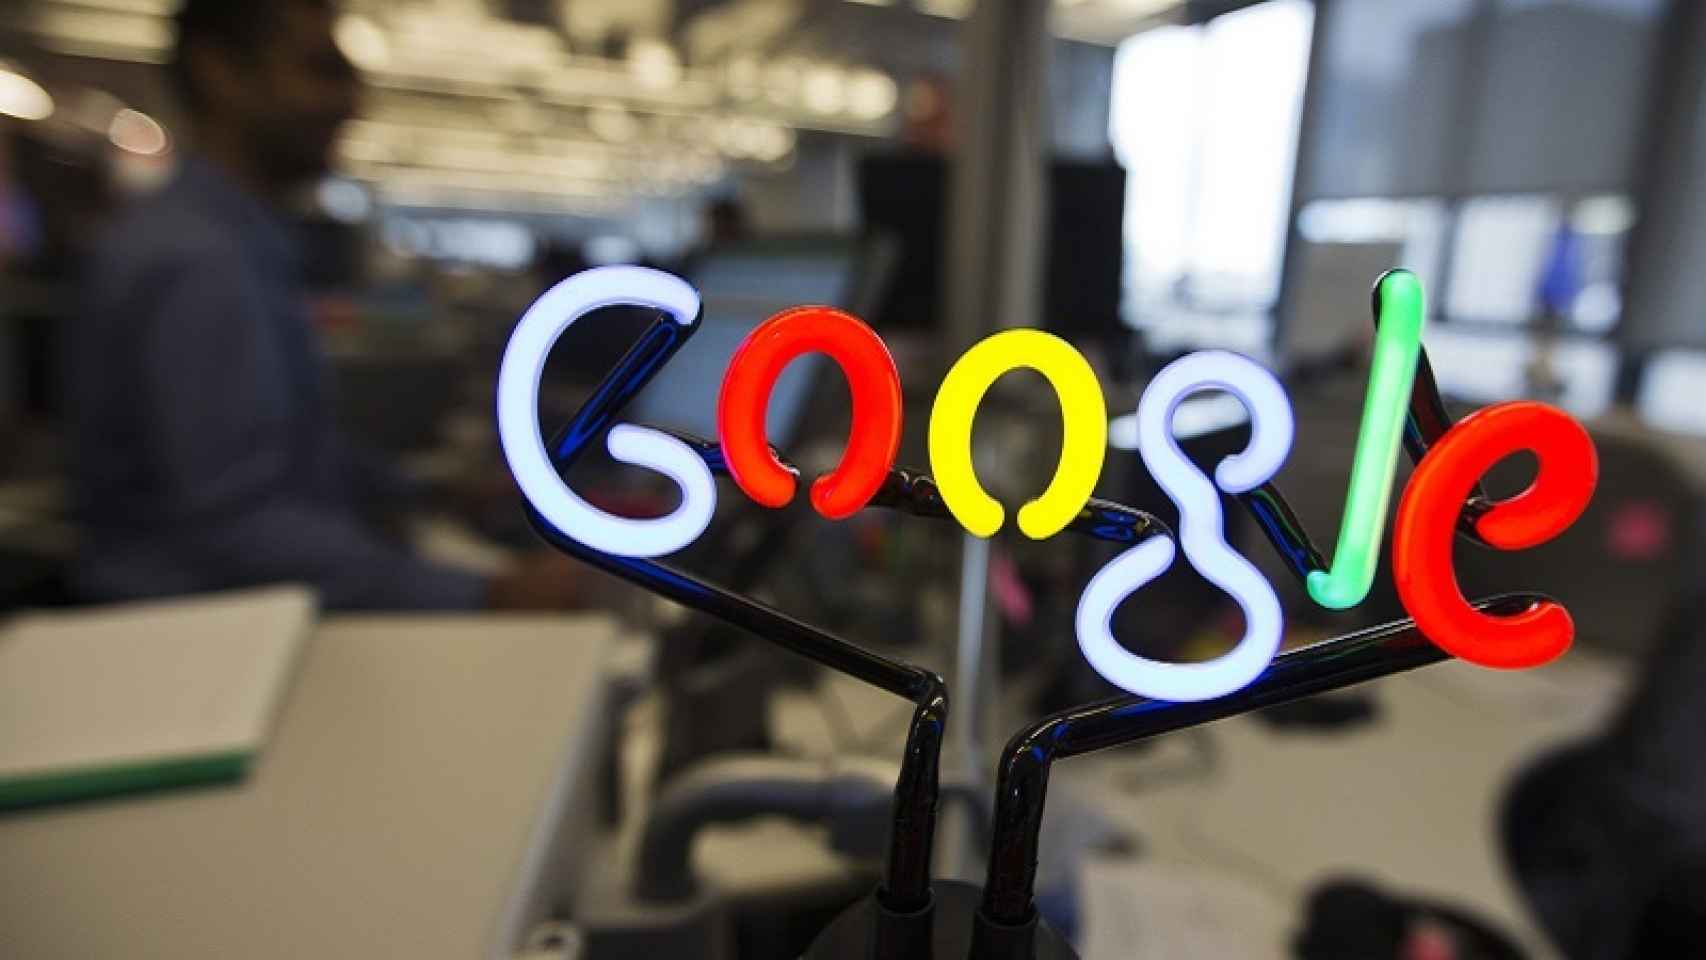 Google despide al autor del texto sexista, cese que puede ser ilegal